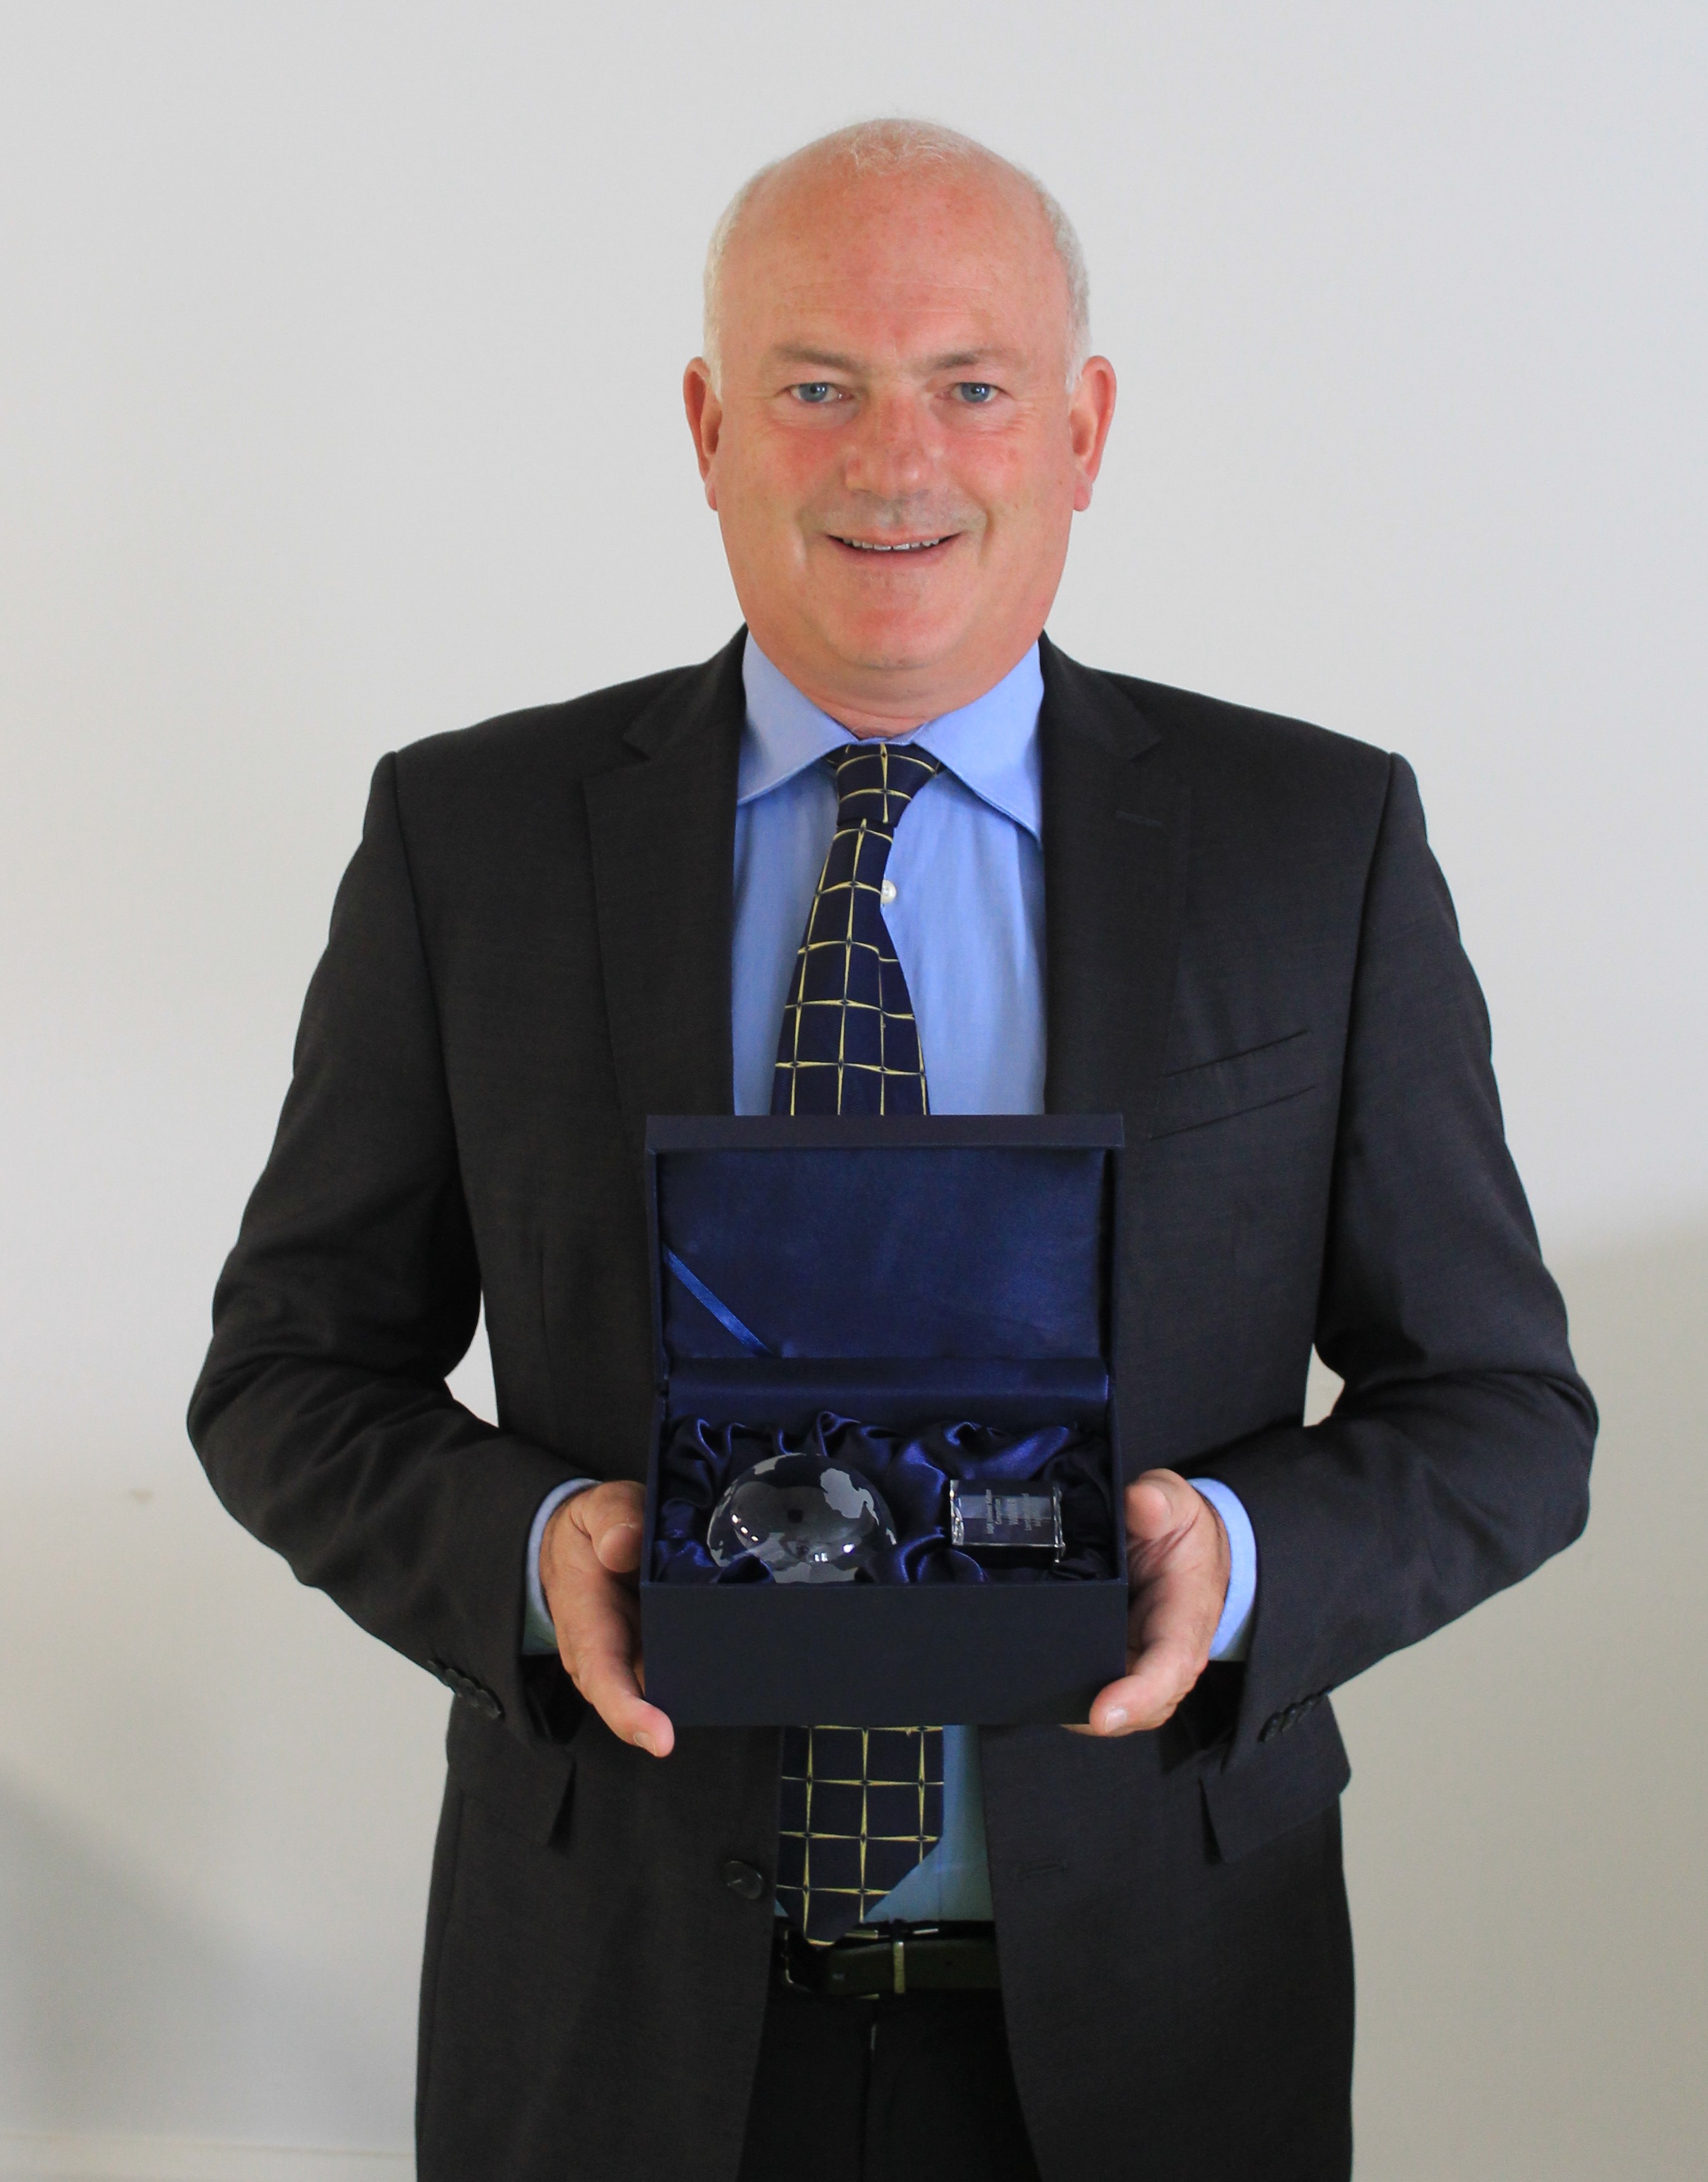 Dr Paul Brady awarded the IADR 